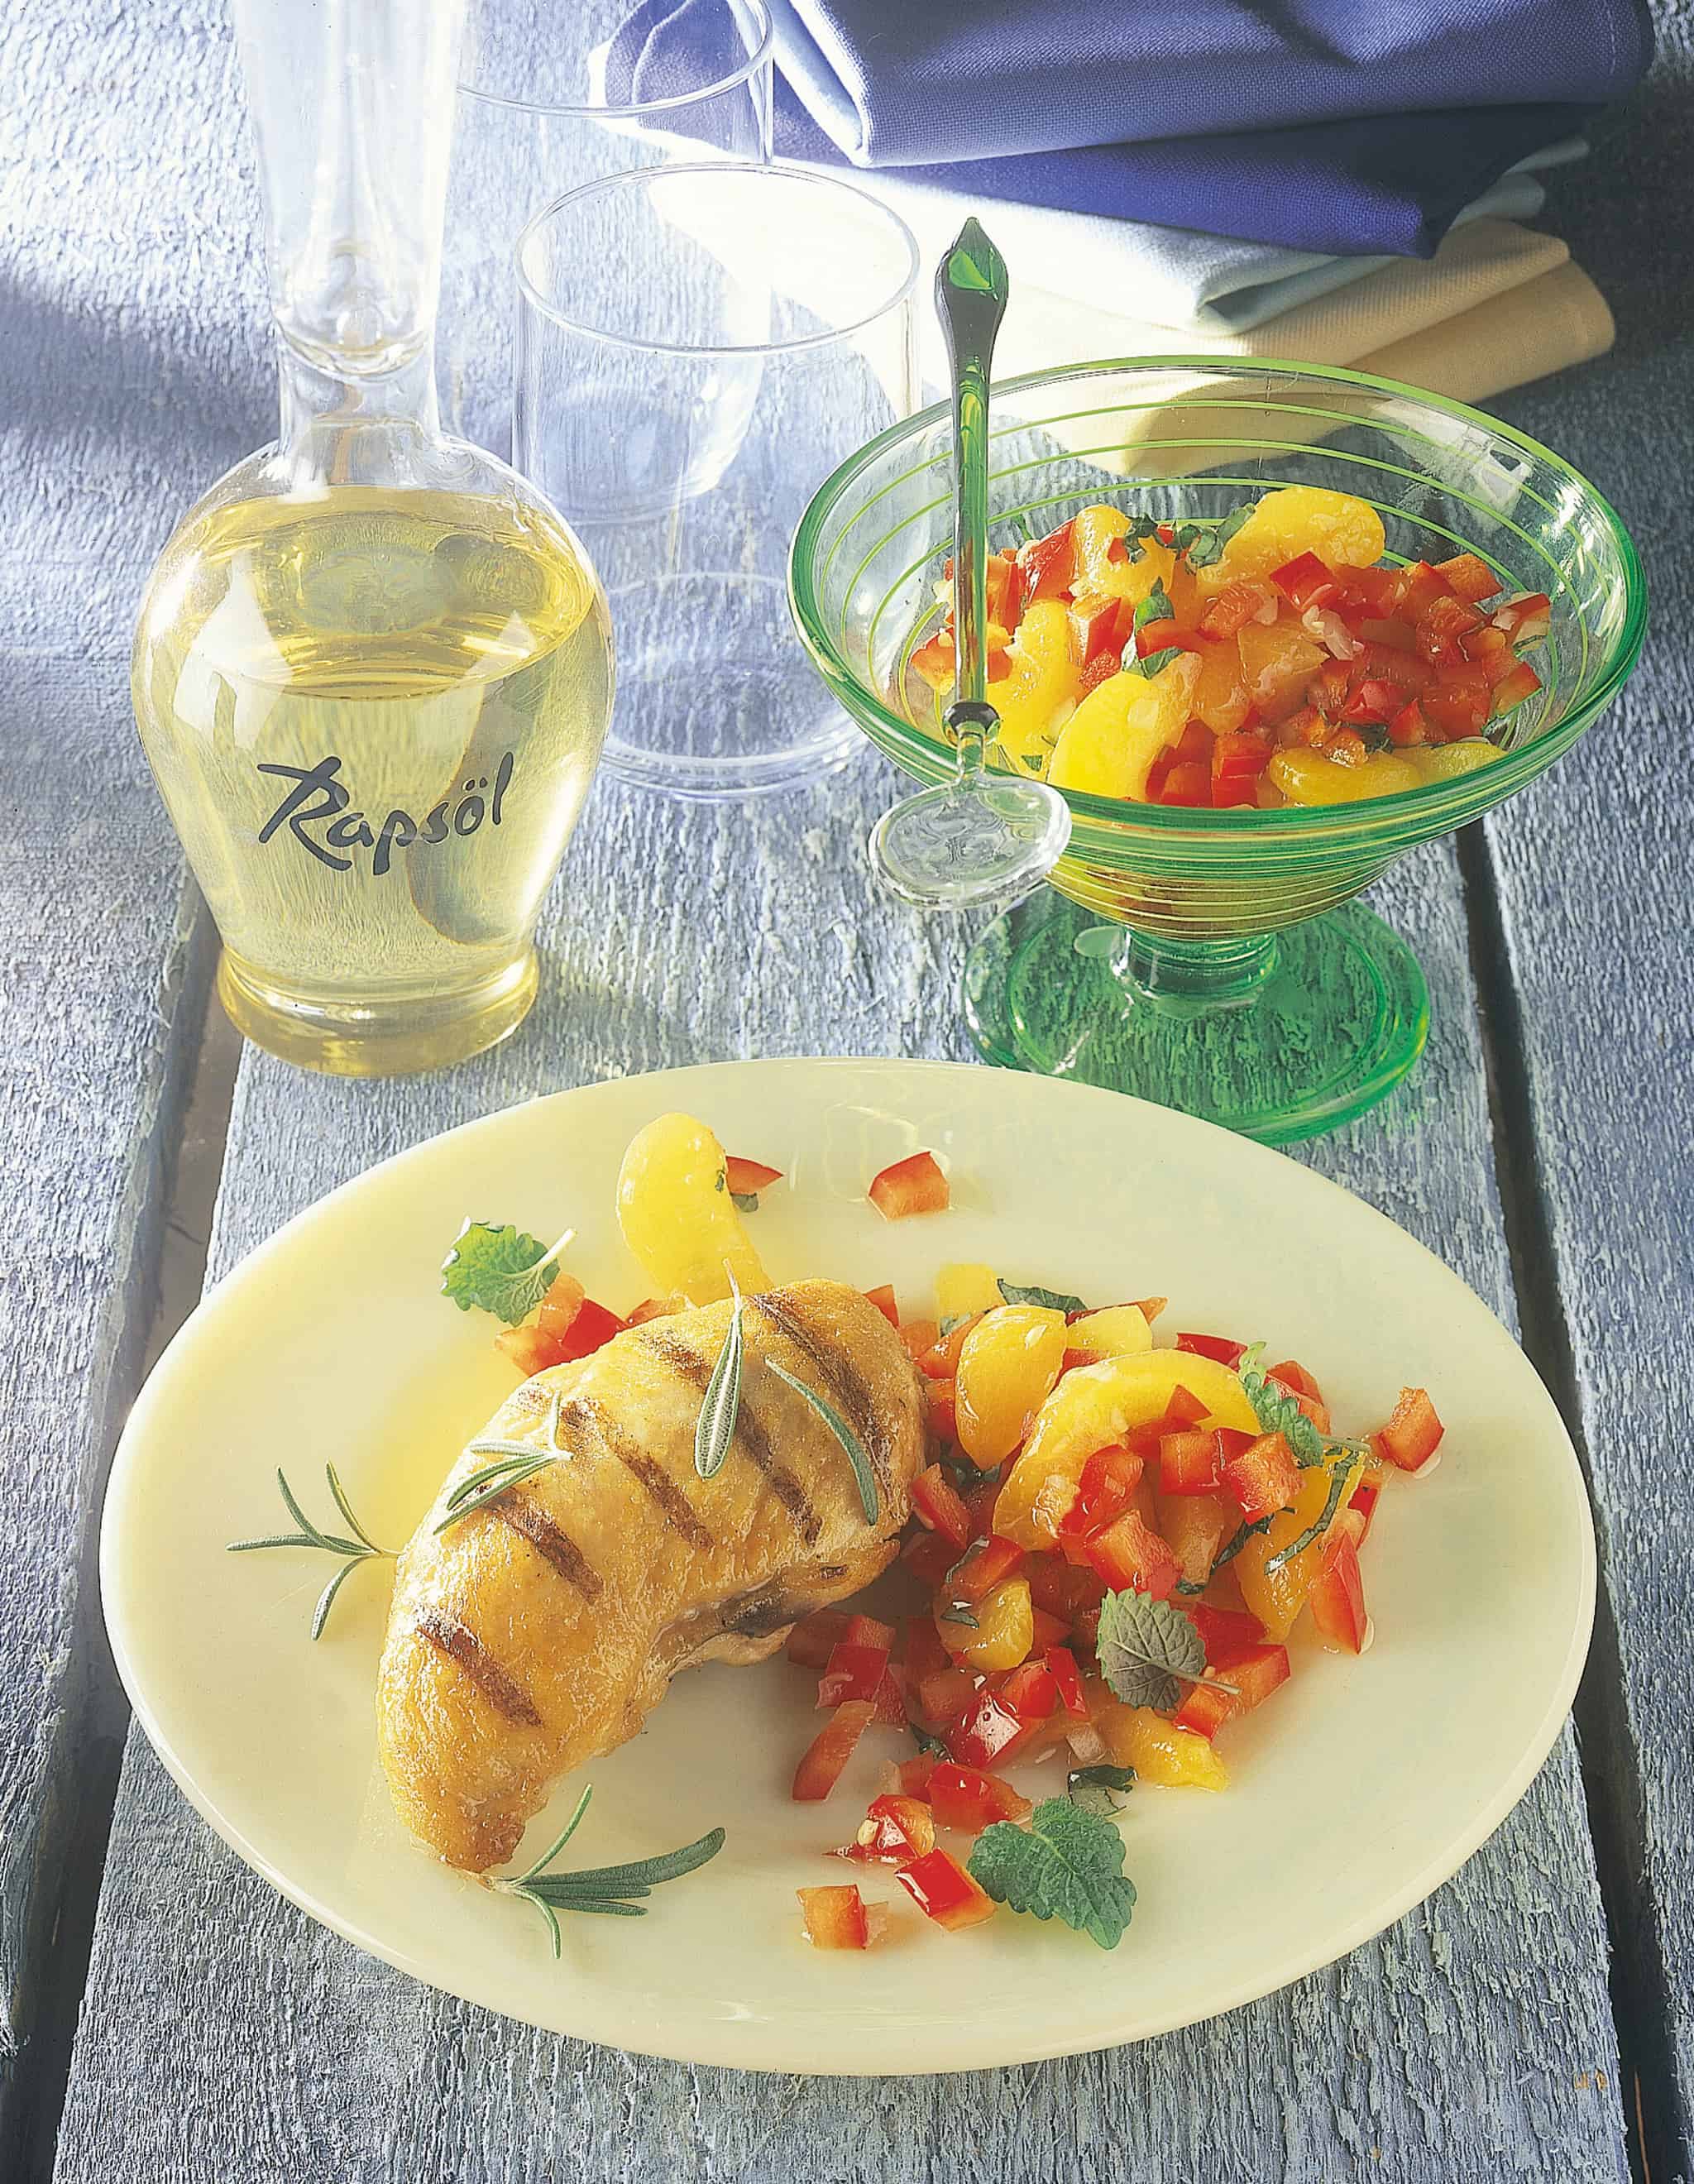 Gegrillte Hähnchenbrust mit Aprikosen-Paprika-Dip › Rügener Rapsöl